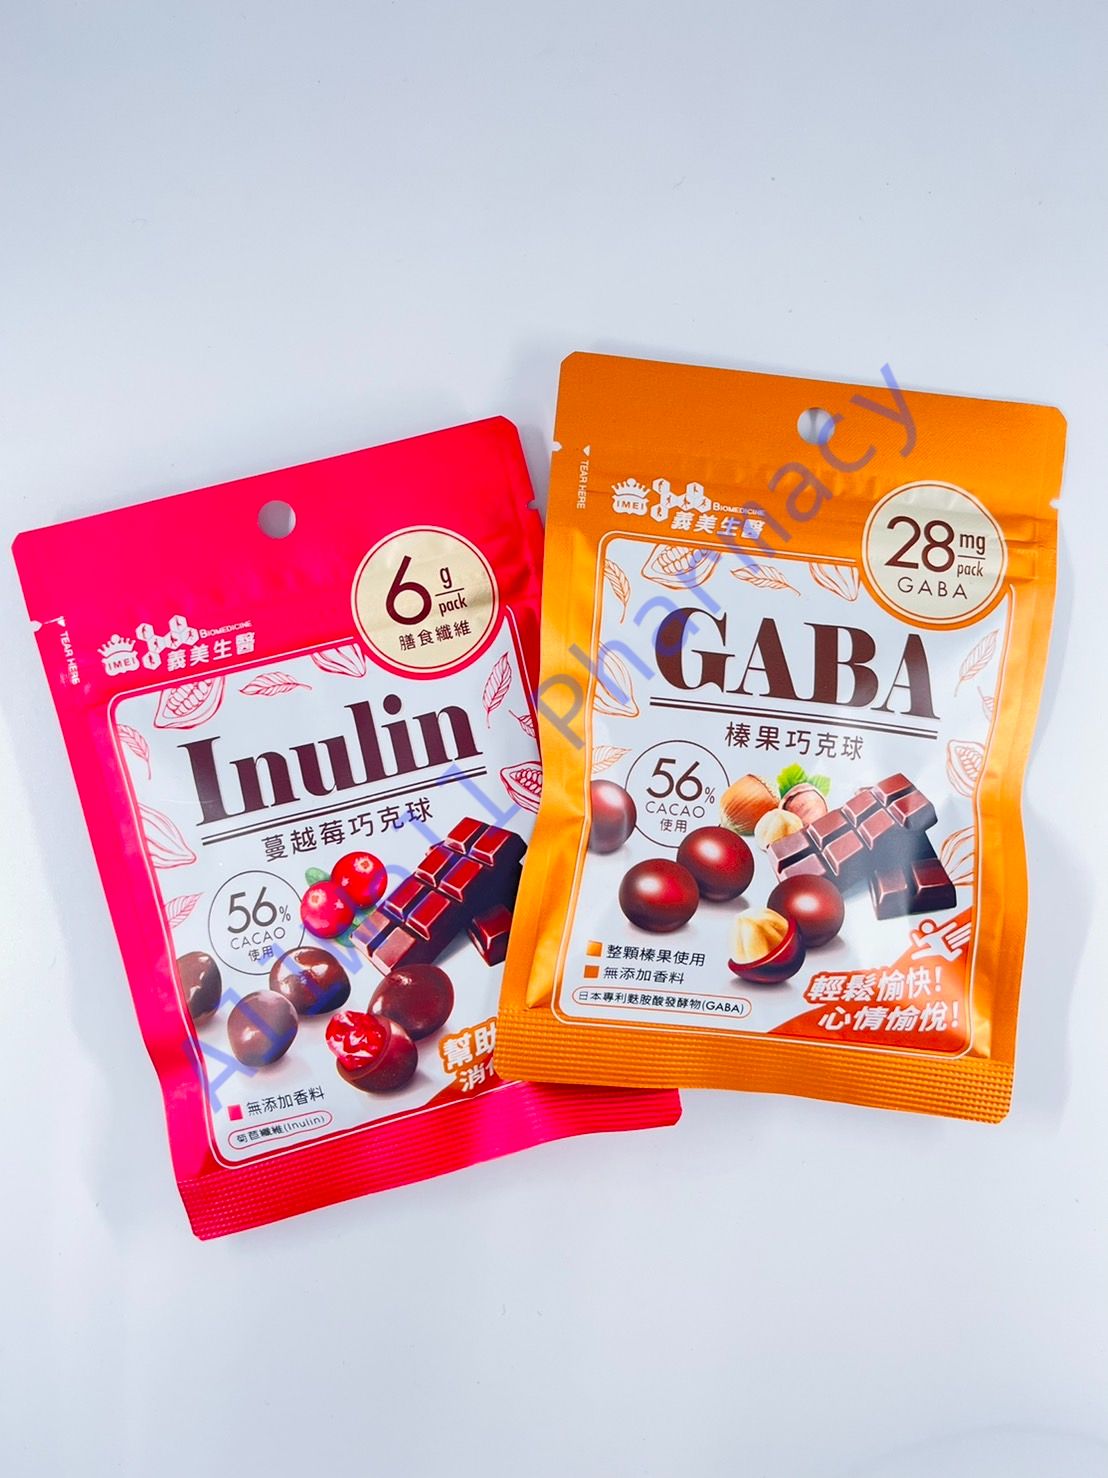 義美生醫 GABA榛果巧克球/Inulin蔓越莓巧克球 (37.5g)